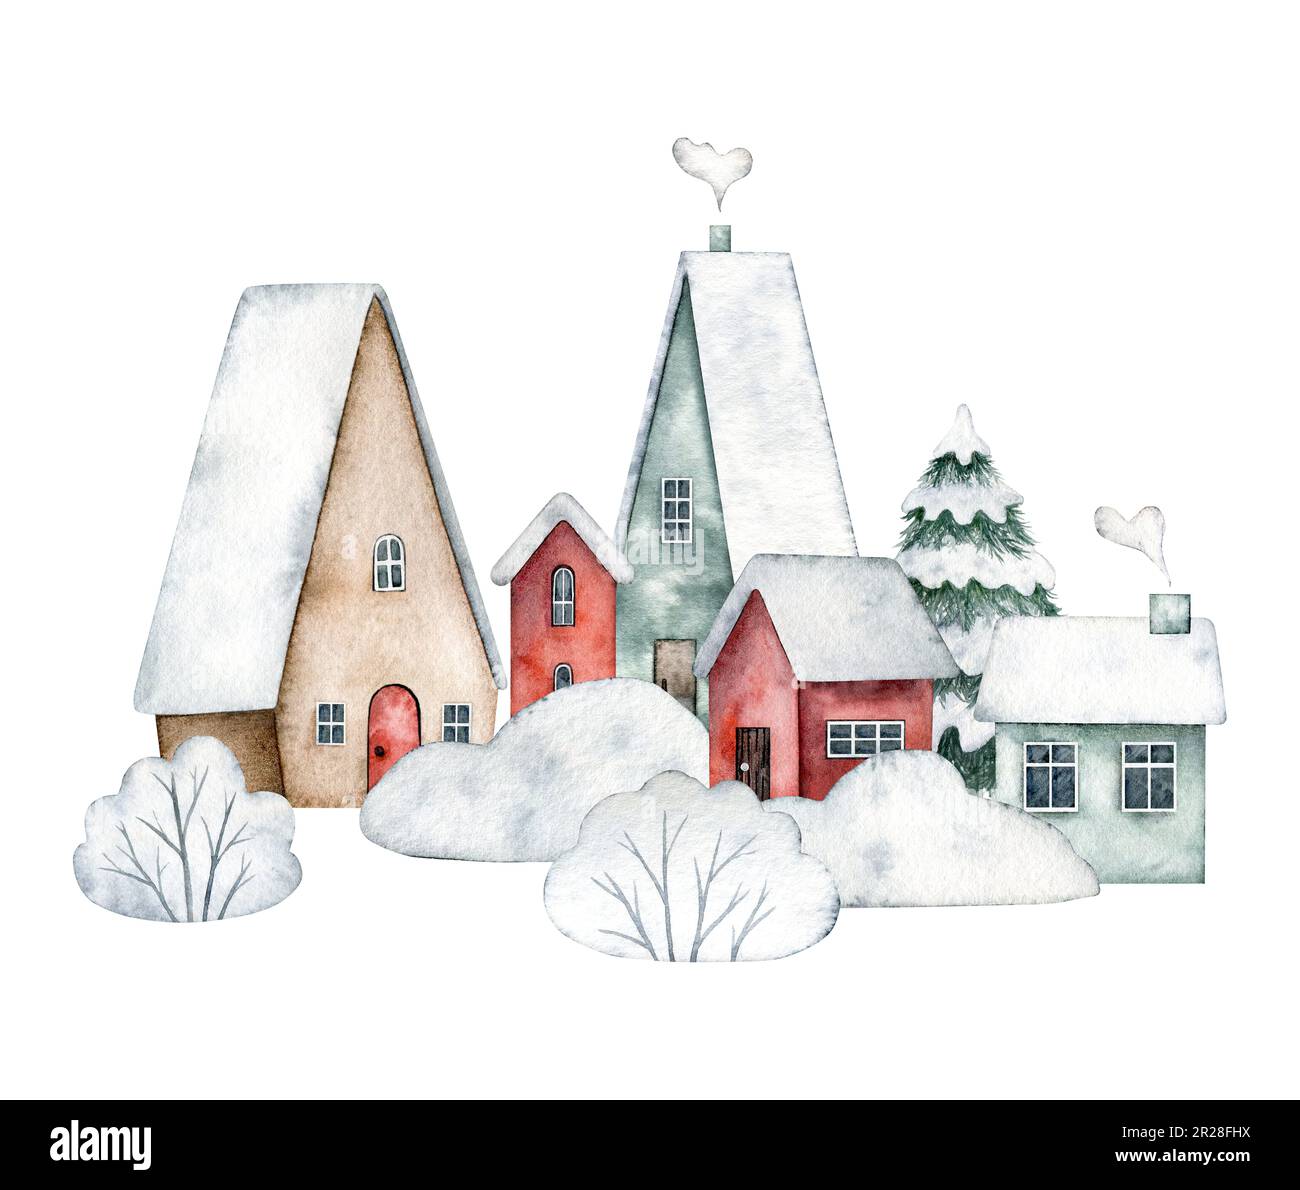 Illustration d'hiver rue enneigée avec de jolies maisons avec portes, fenêtres, cheminée, avec de la neige sur le toit et l'épicéa., buissons dans la neige, déneigeuses Banque D'Images